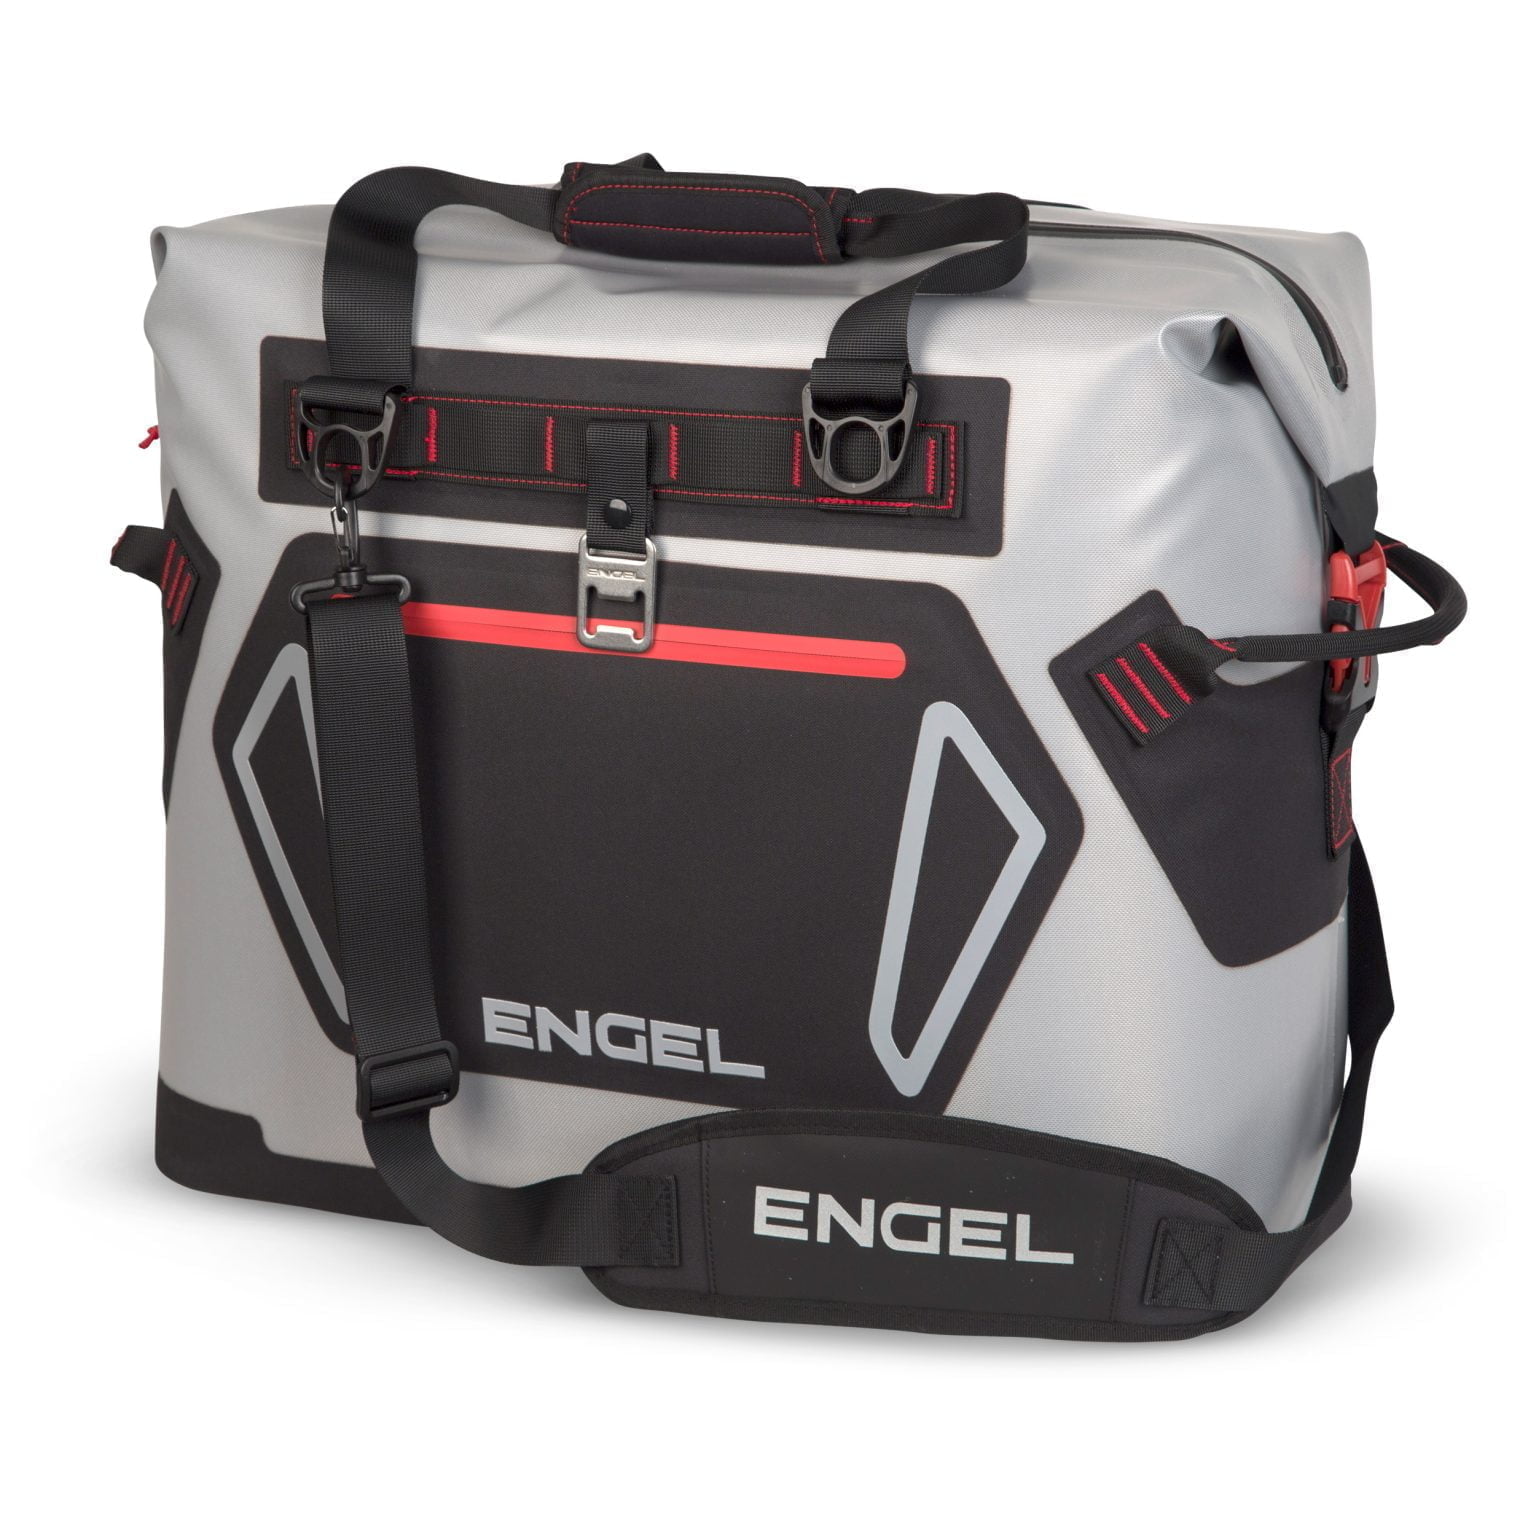 Engel Soft Cooler Bag 28 Litre